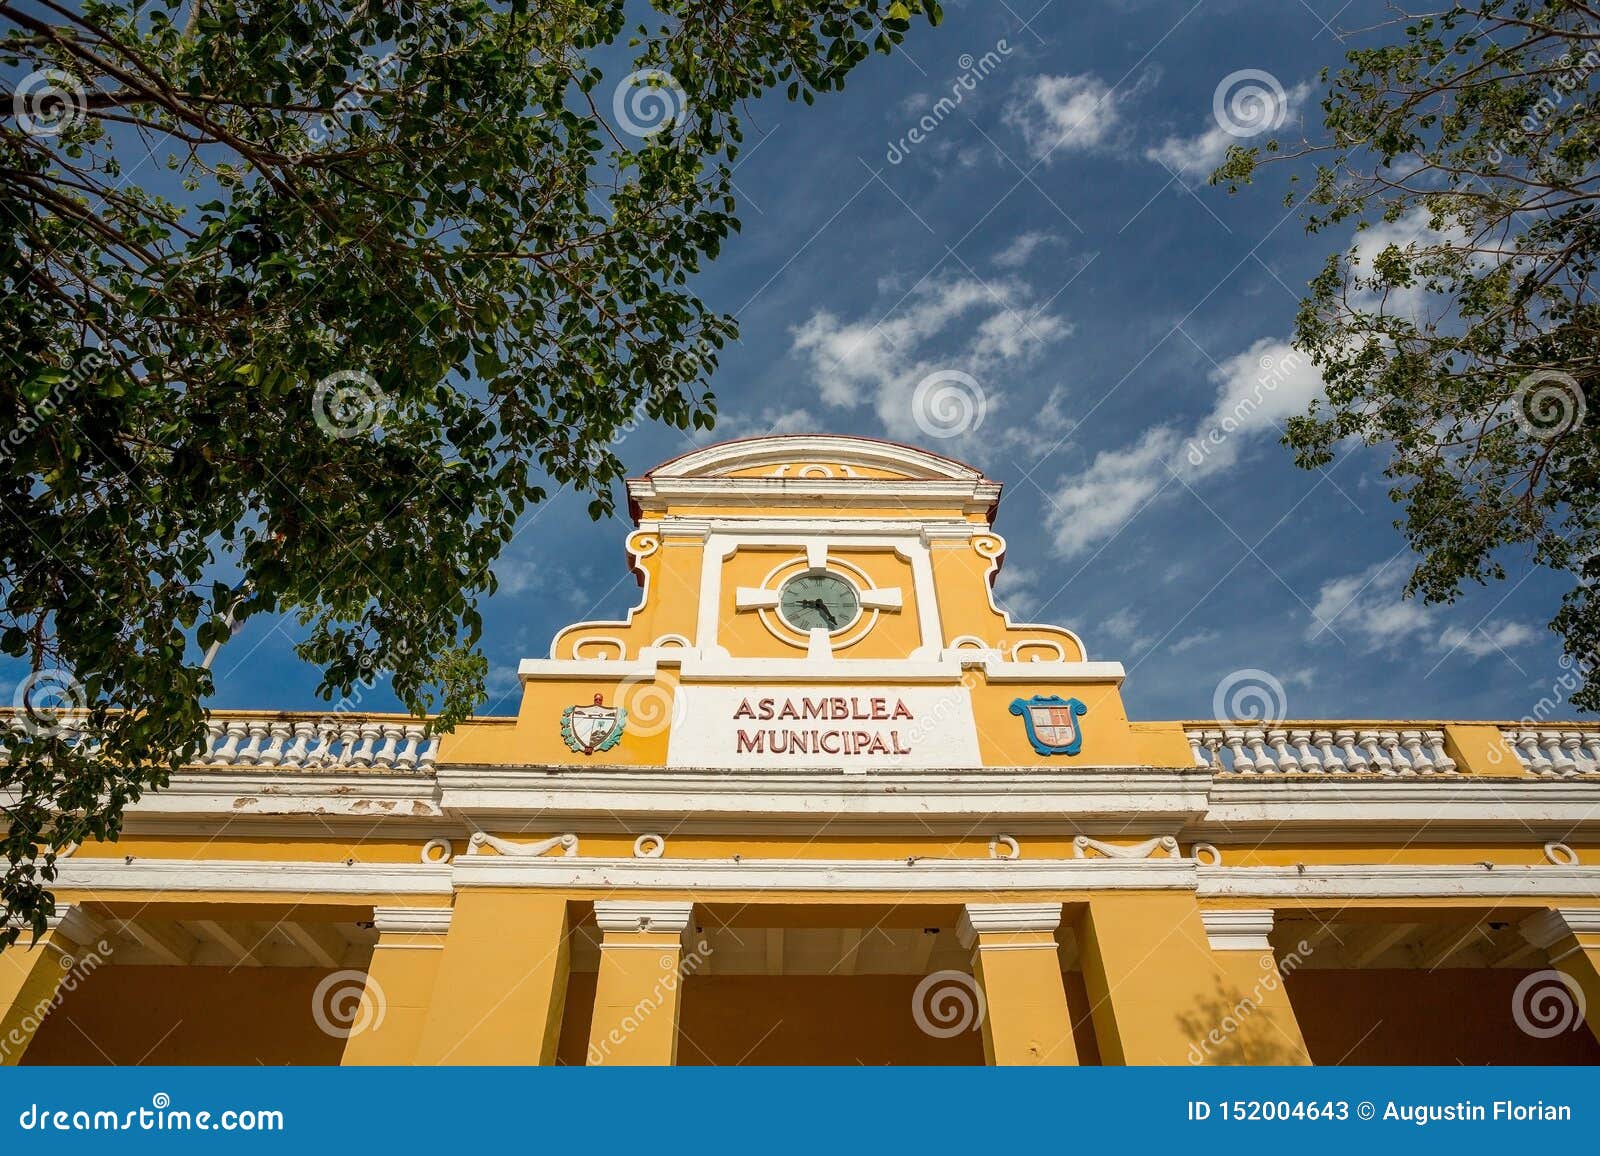 trinidad city hall, cuba